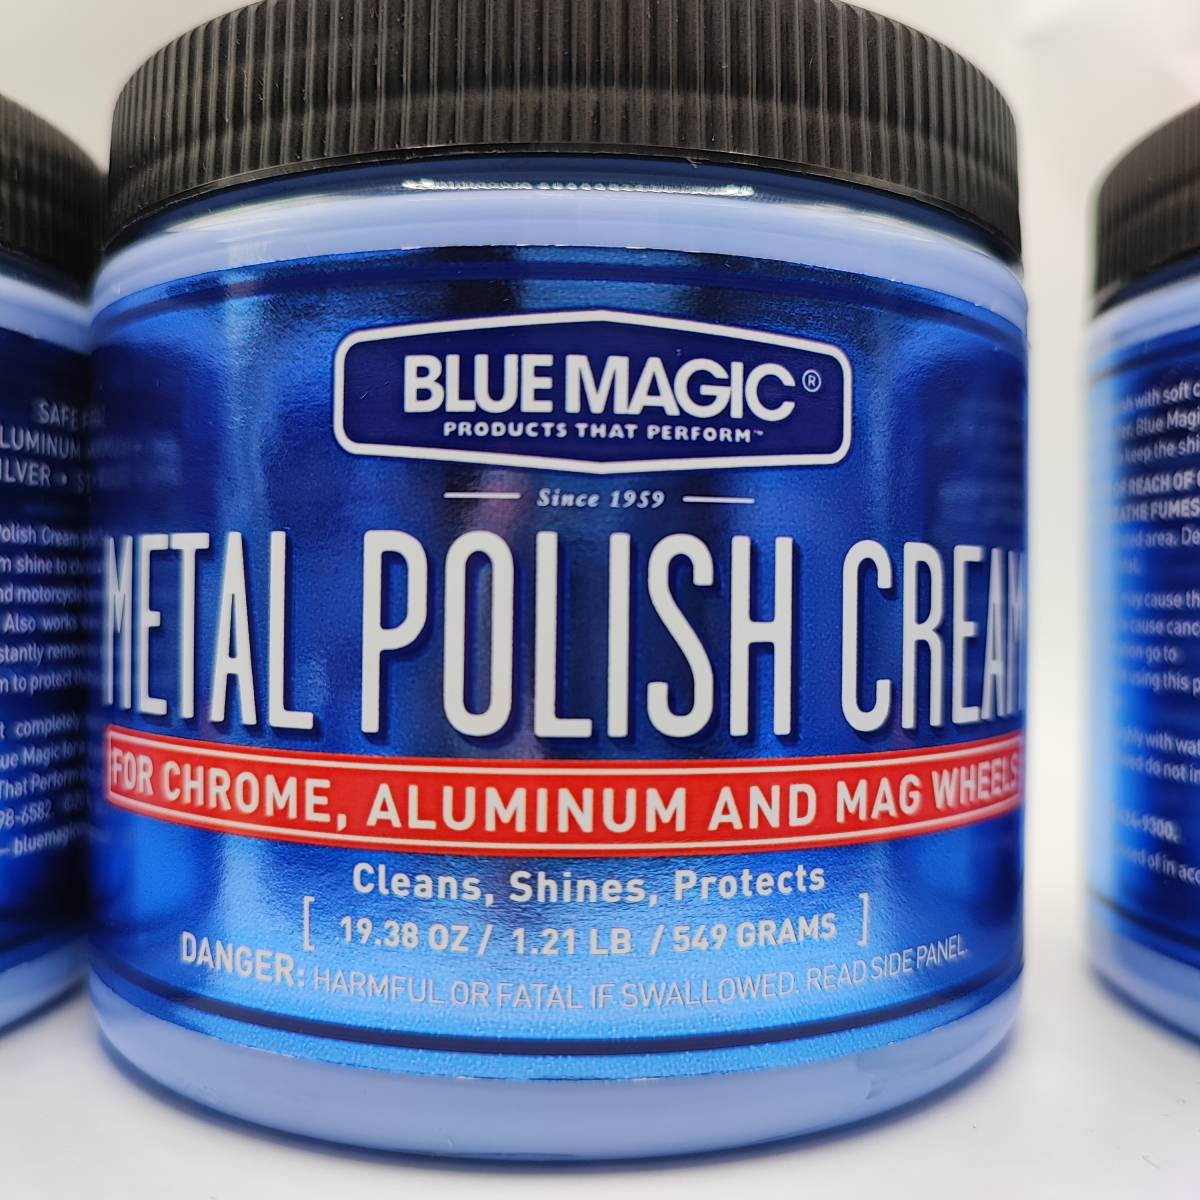 お買い得 Blue Magic ブルーマジック<br>BM500<br>METAL POLISH CREAM メタルポリッシュクリーム 金属光沢磨き  550g